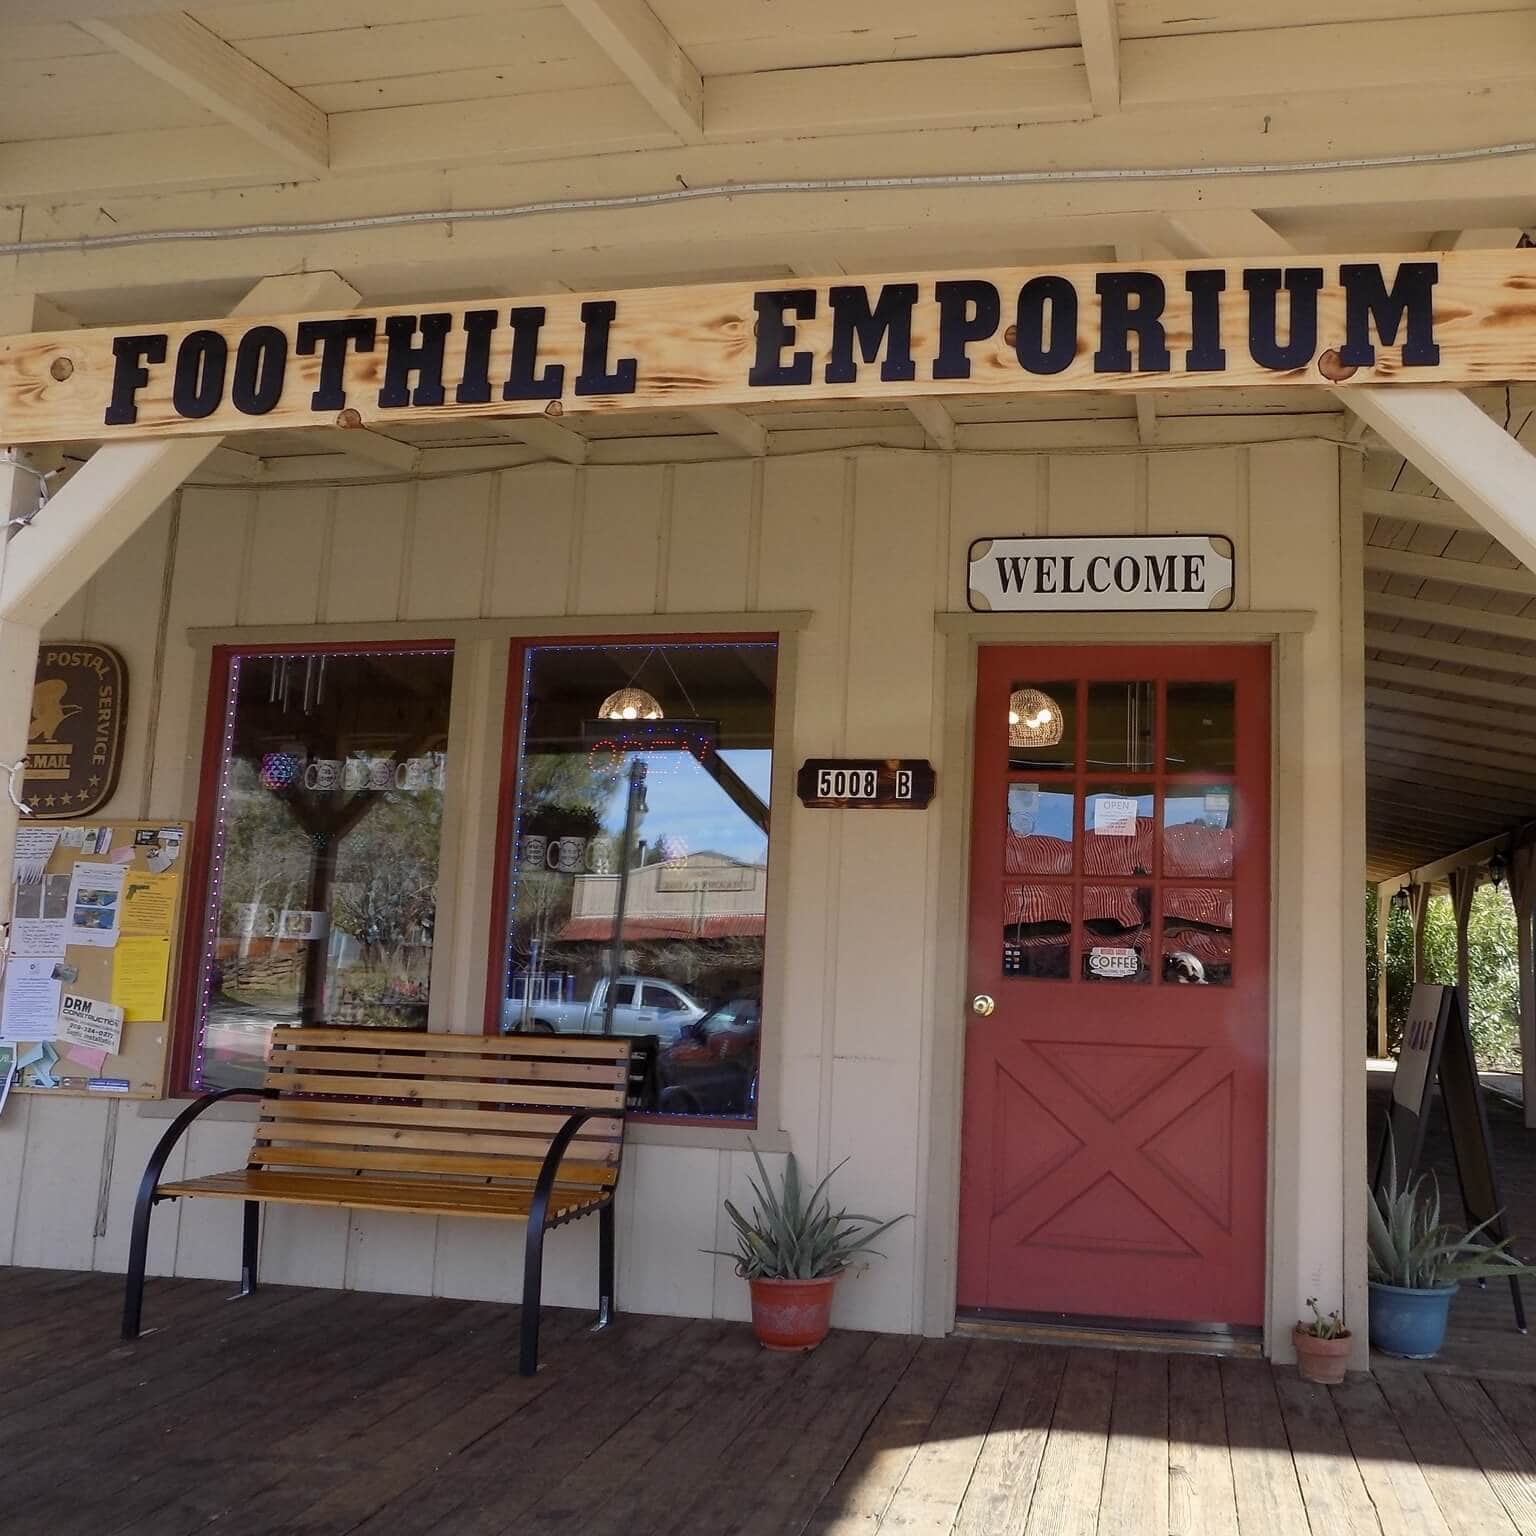 Foothills Emporium